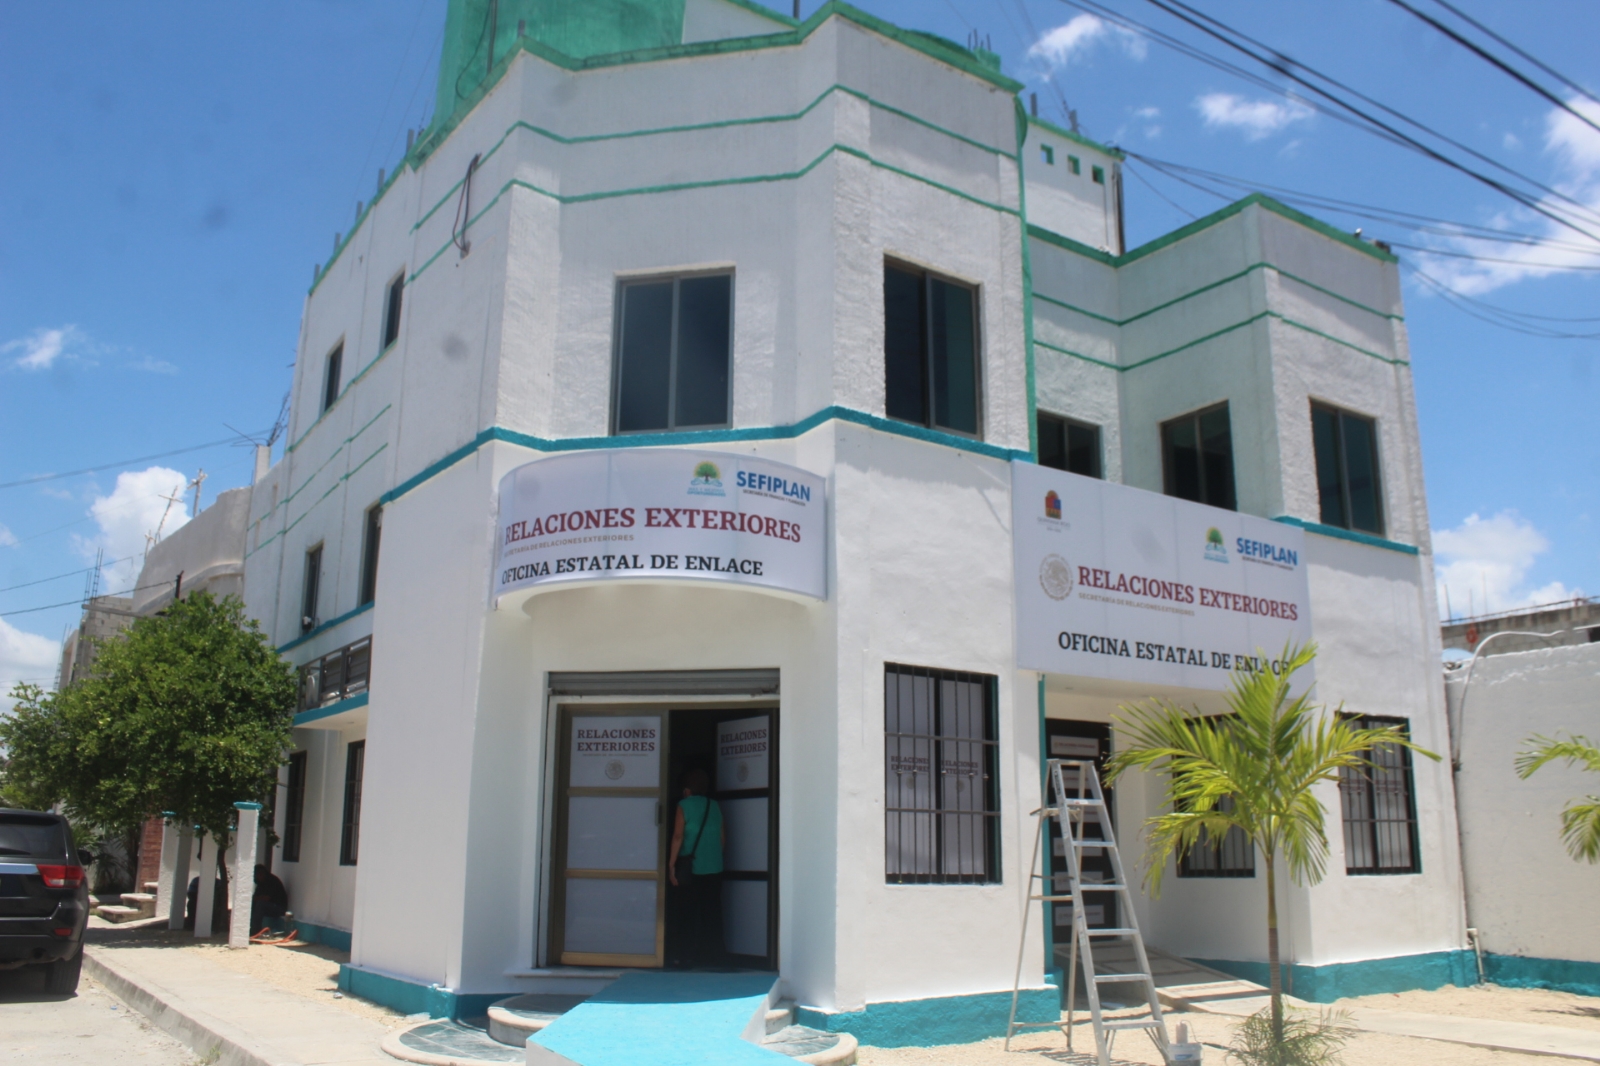 Oficina de Relaciones Exteriores en Chetumal, sin emisión de pasaportes